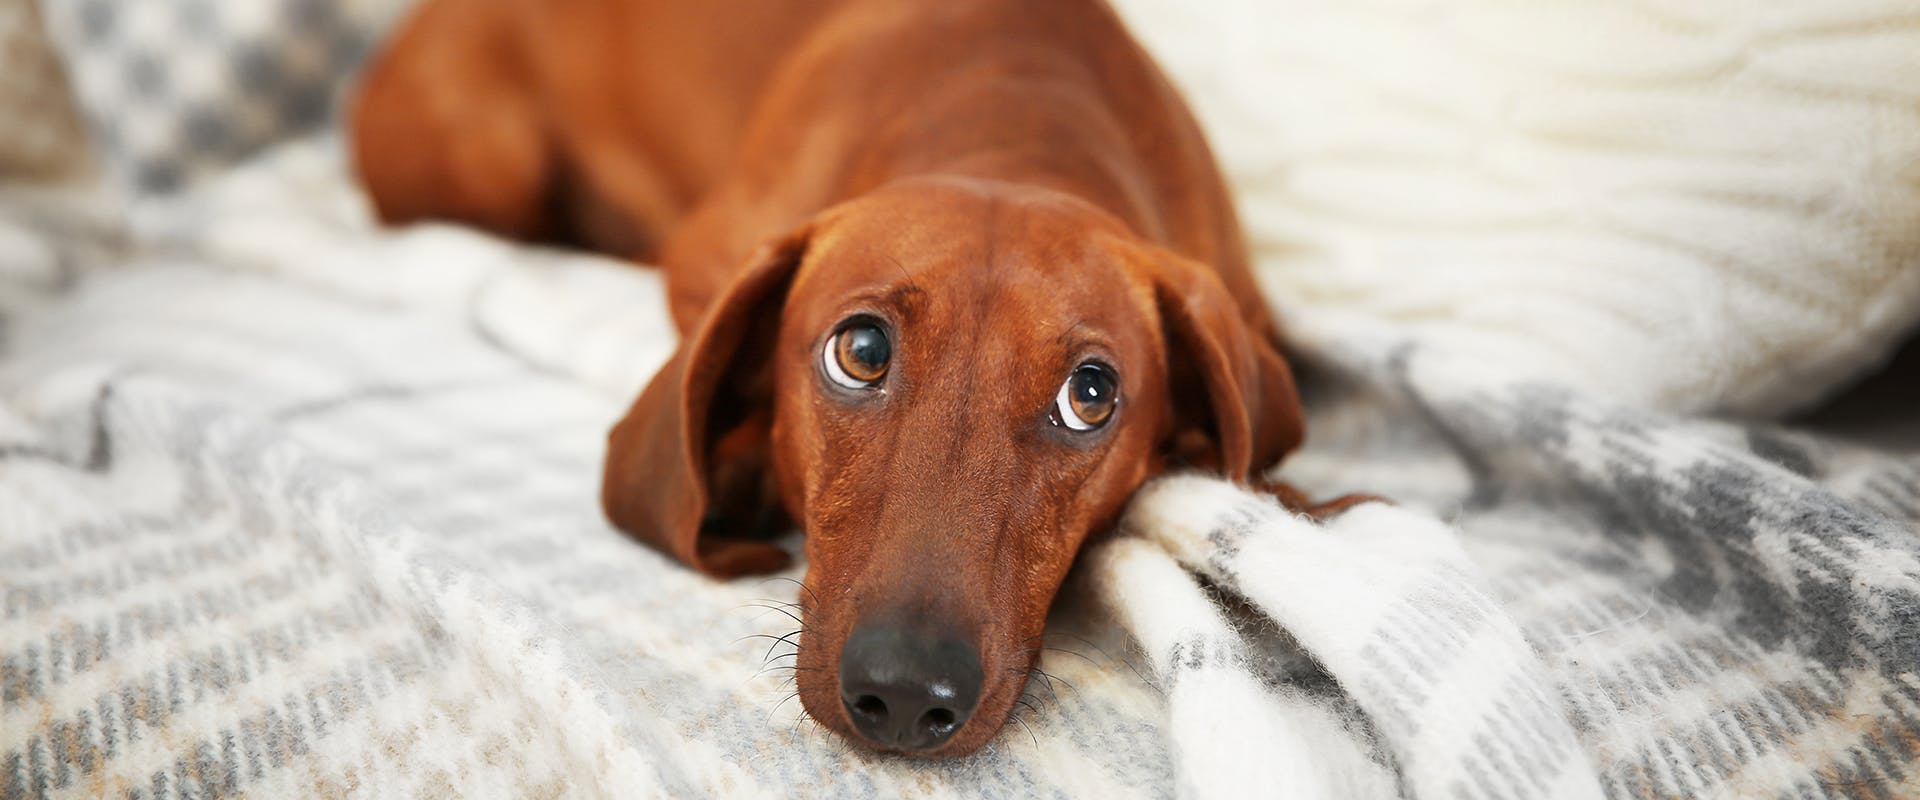 A Dachshund dog laying on a blanket